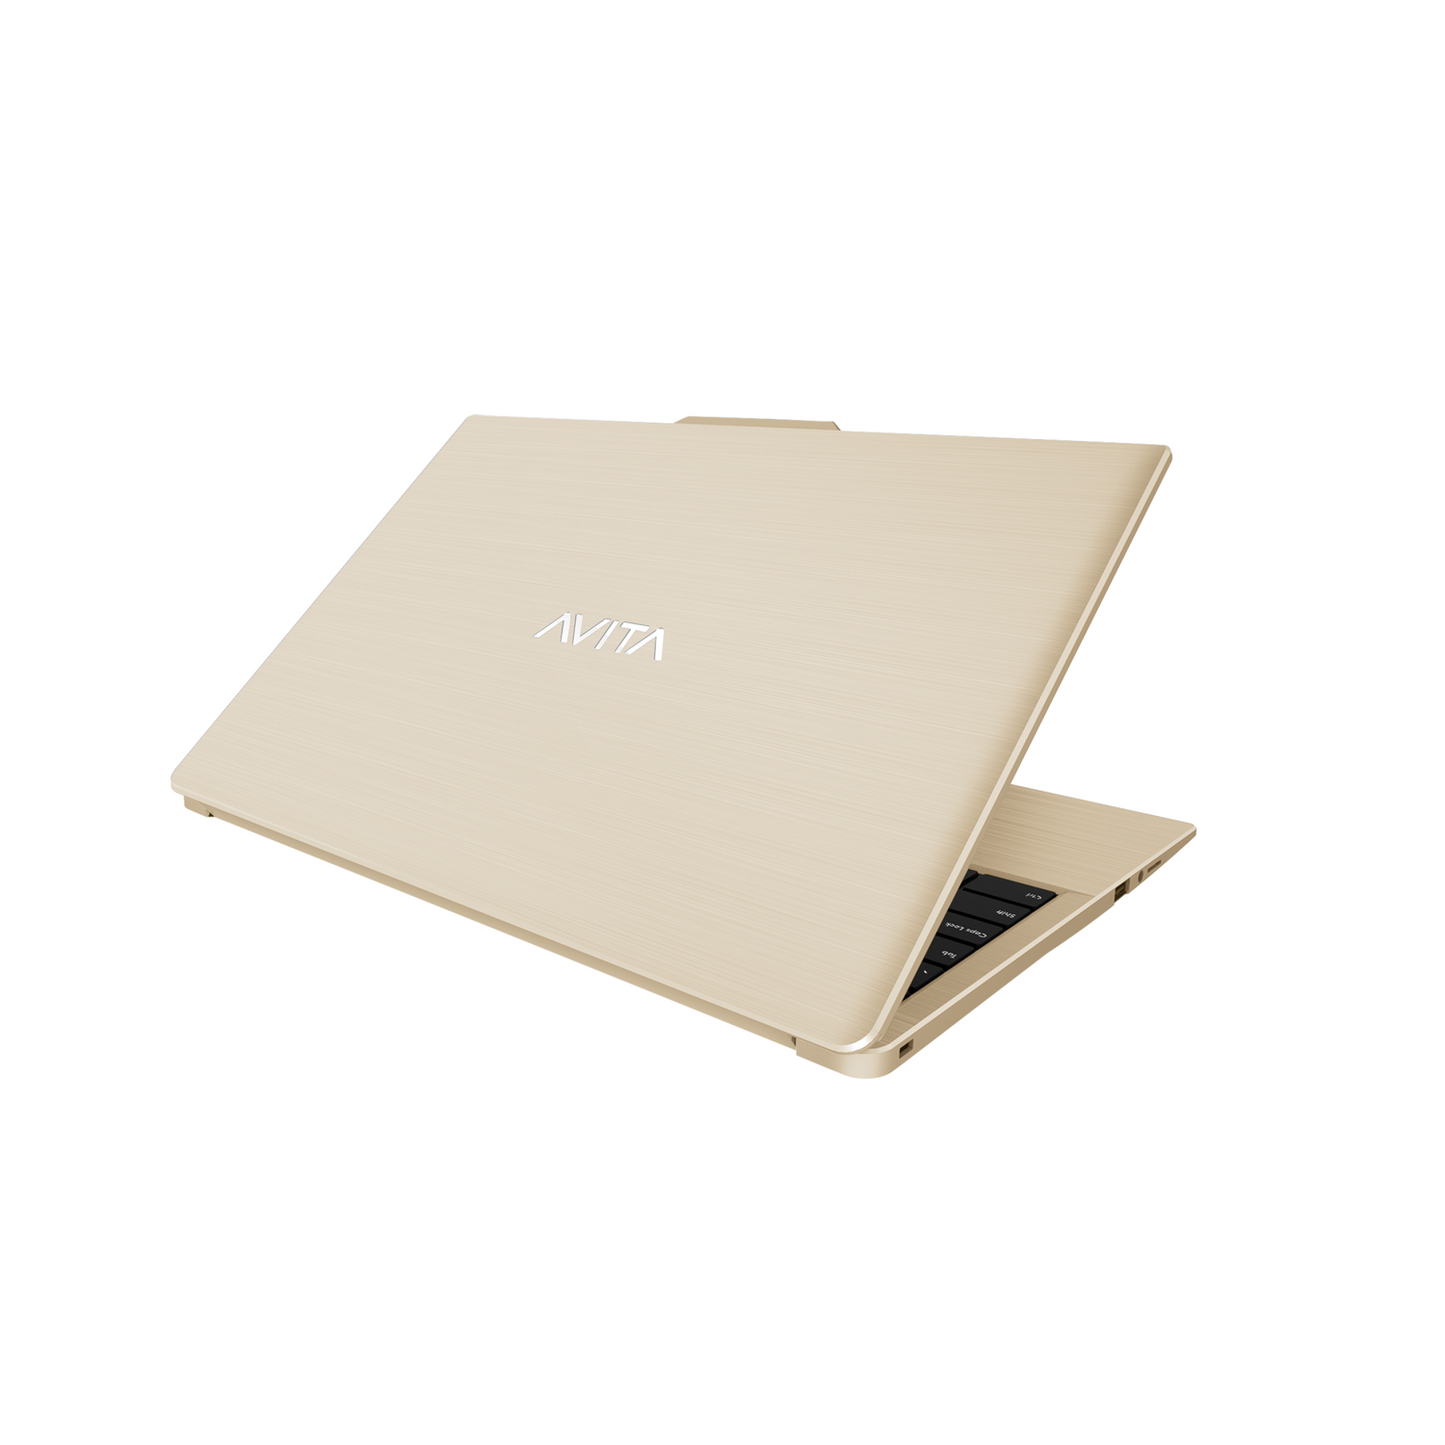 AVITA PURA 15 Laptop 15.6" Full HD AMD Ryzen 3 3500U 8Gb 256Gb SSD W10 Gold